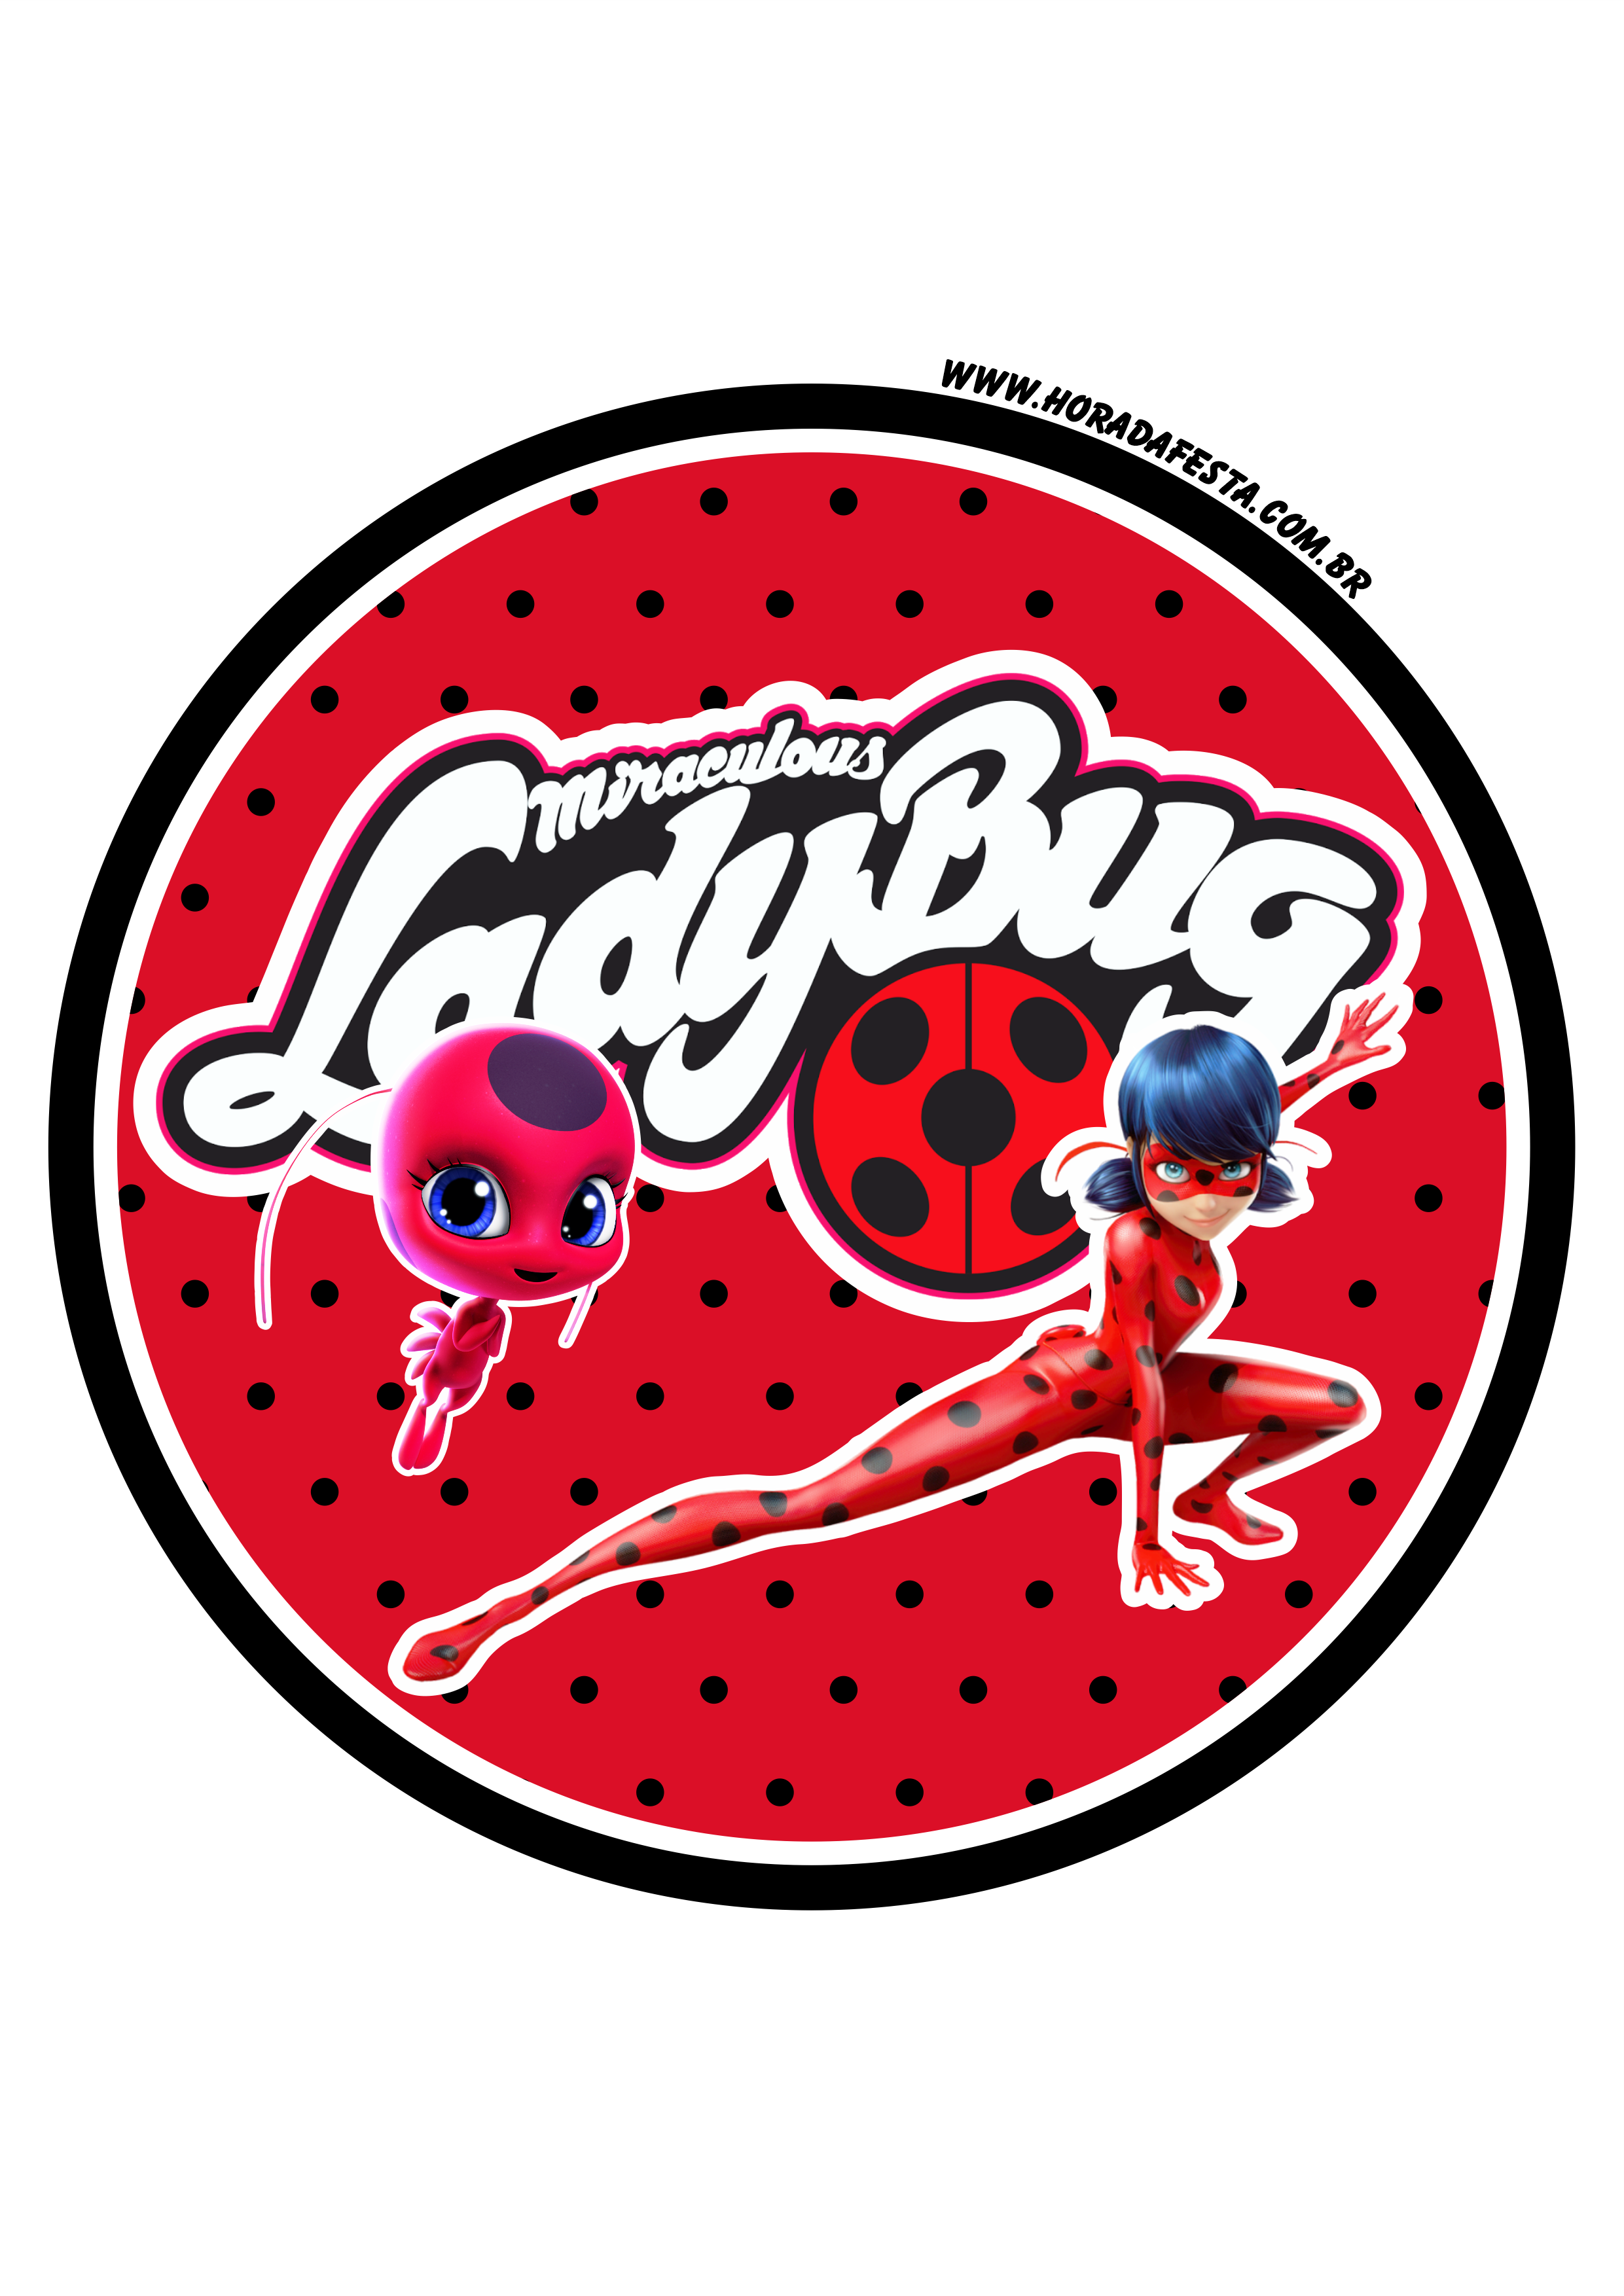 Miraculous Ladybug adesivo redondo fazendo a nossa festa artes gráficas artigos de papelaria decoração png